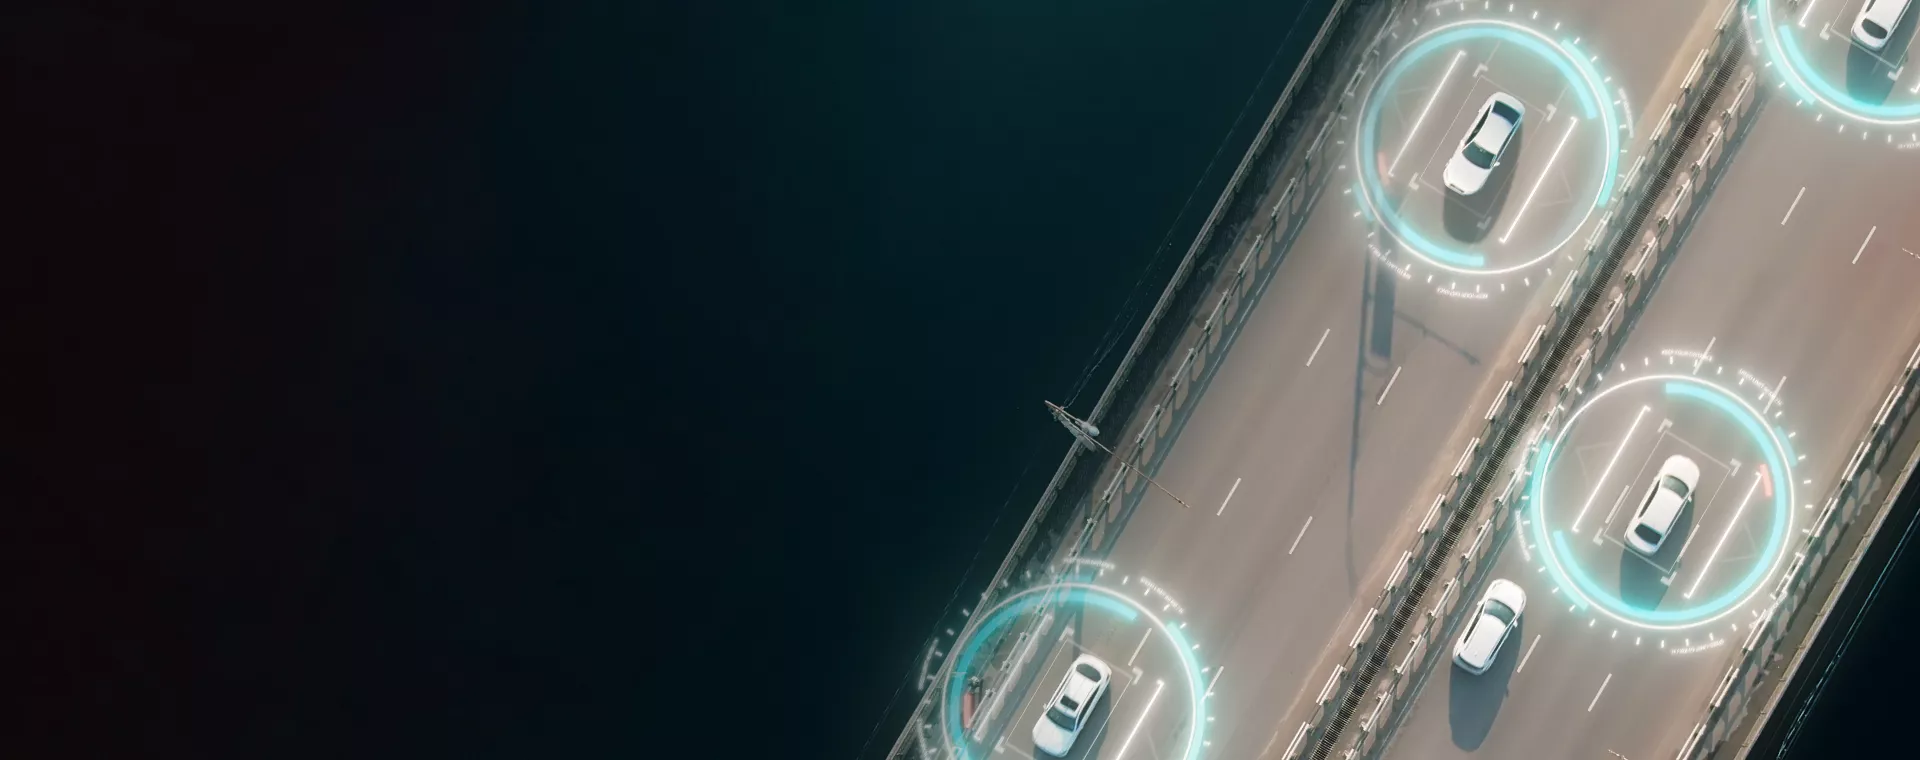 Aerial View Self Driving Autopilot Autonomous Cars